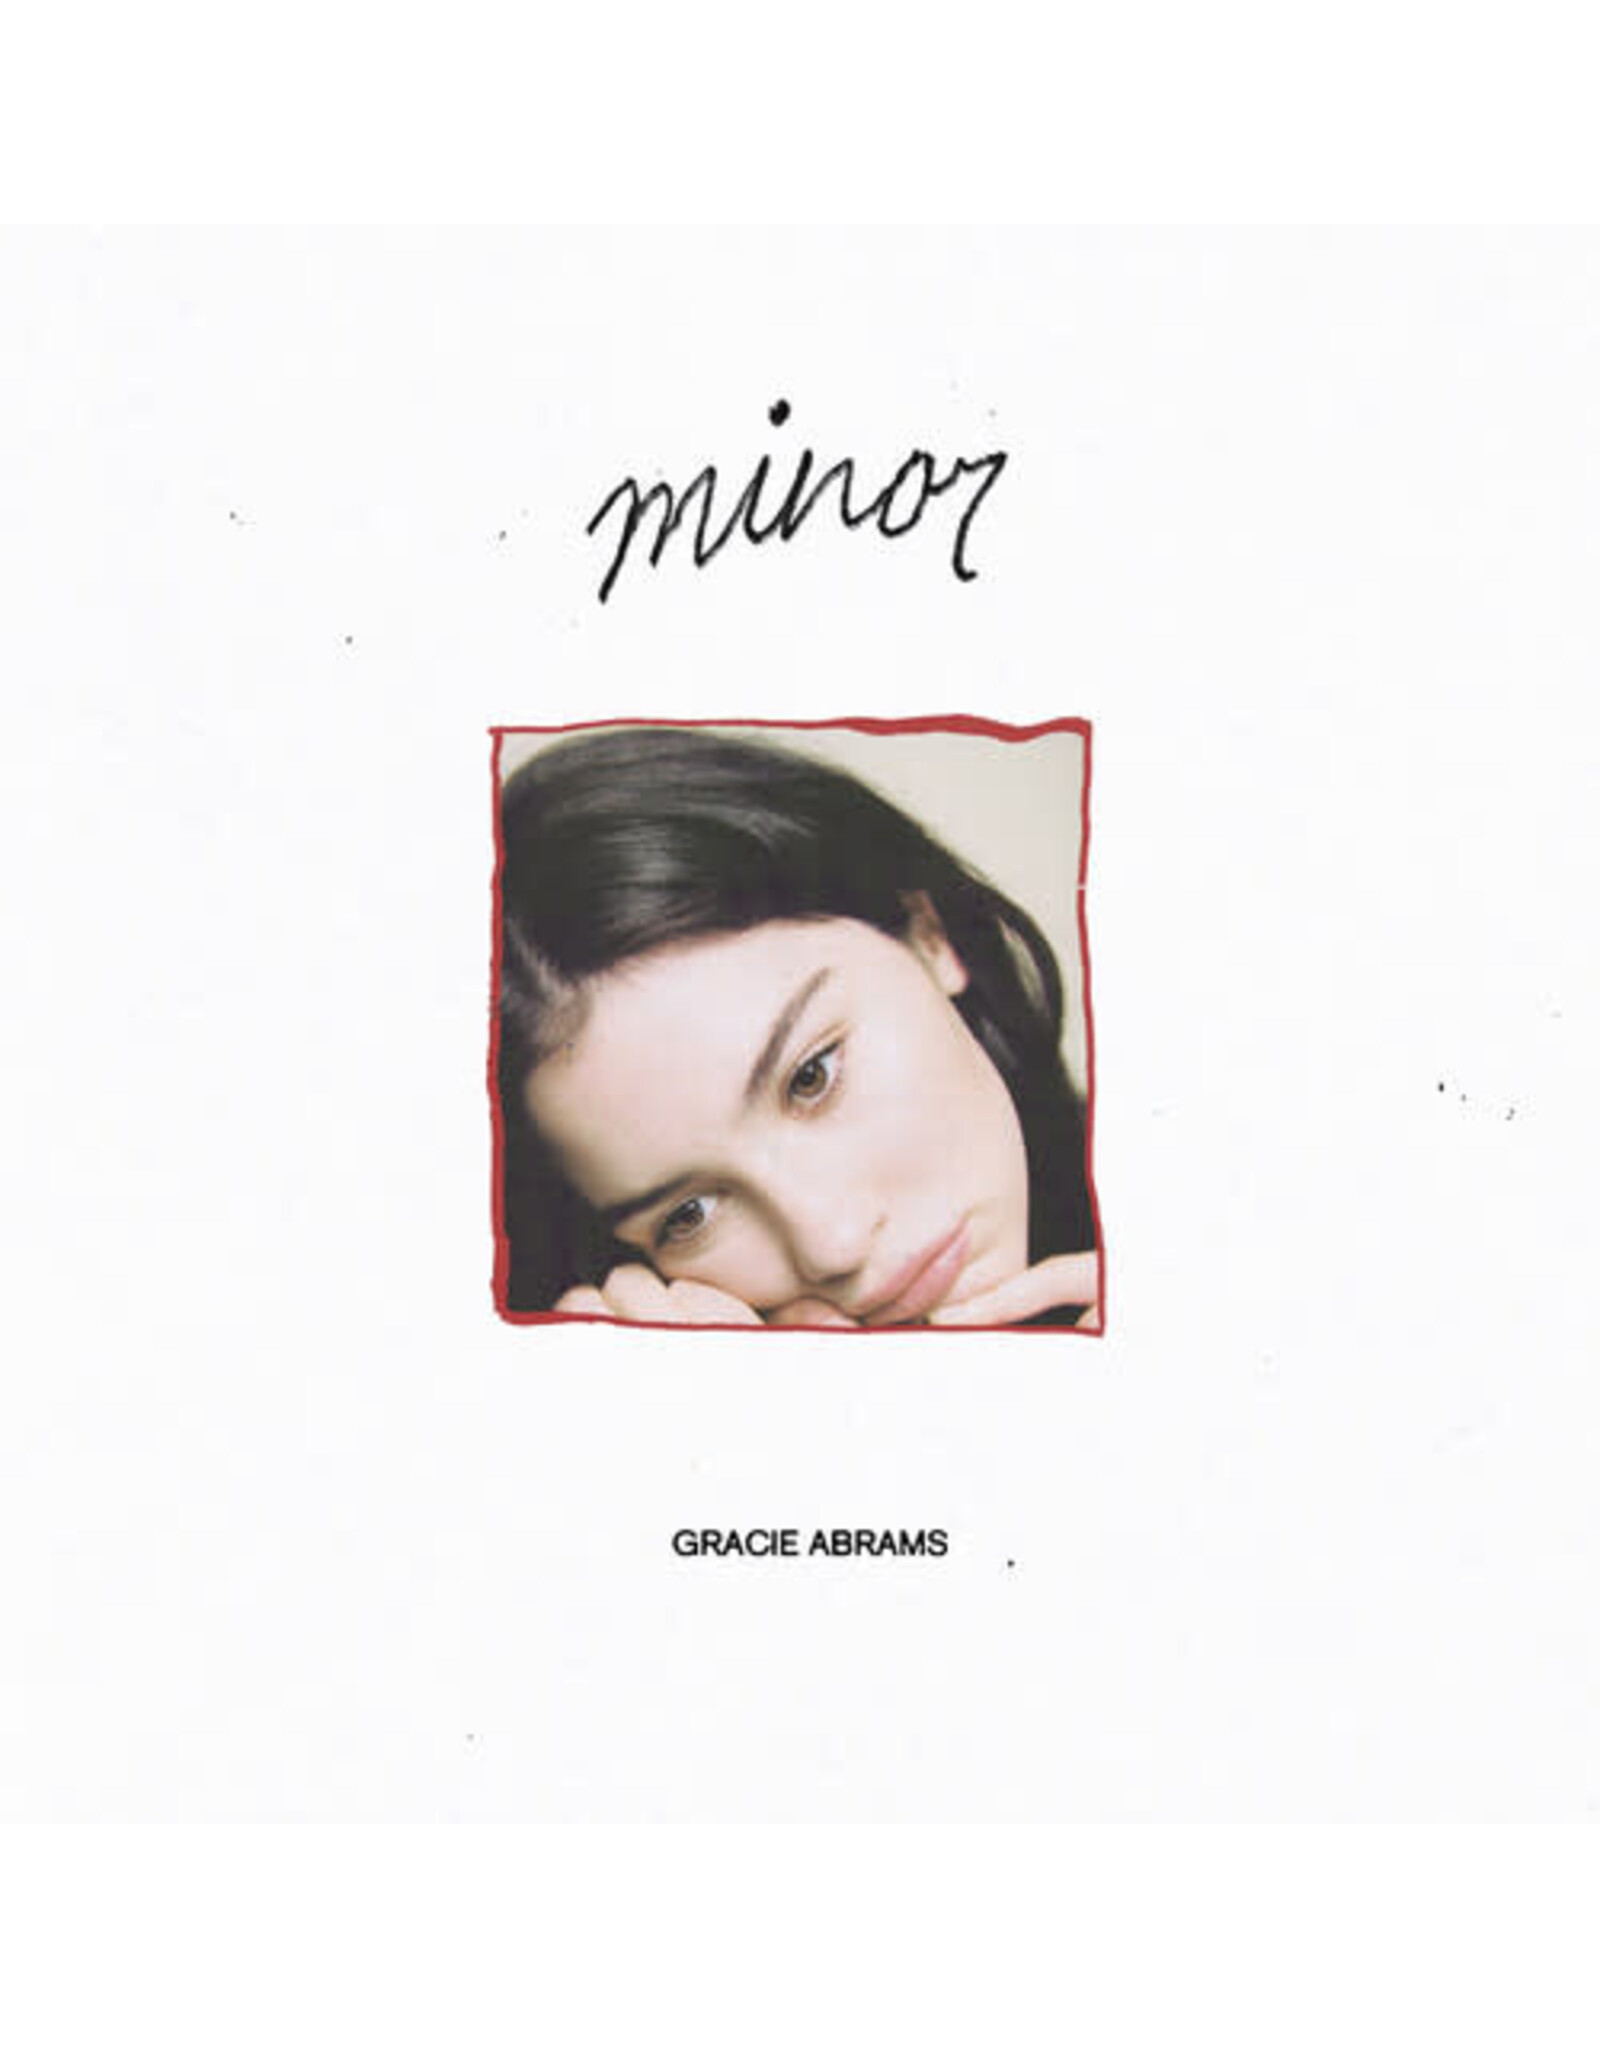 Gracie Abrams - Minor